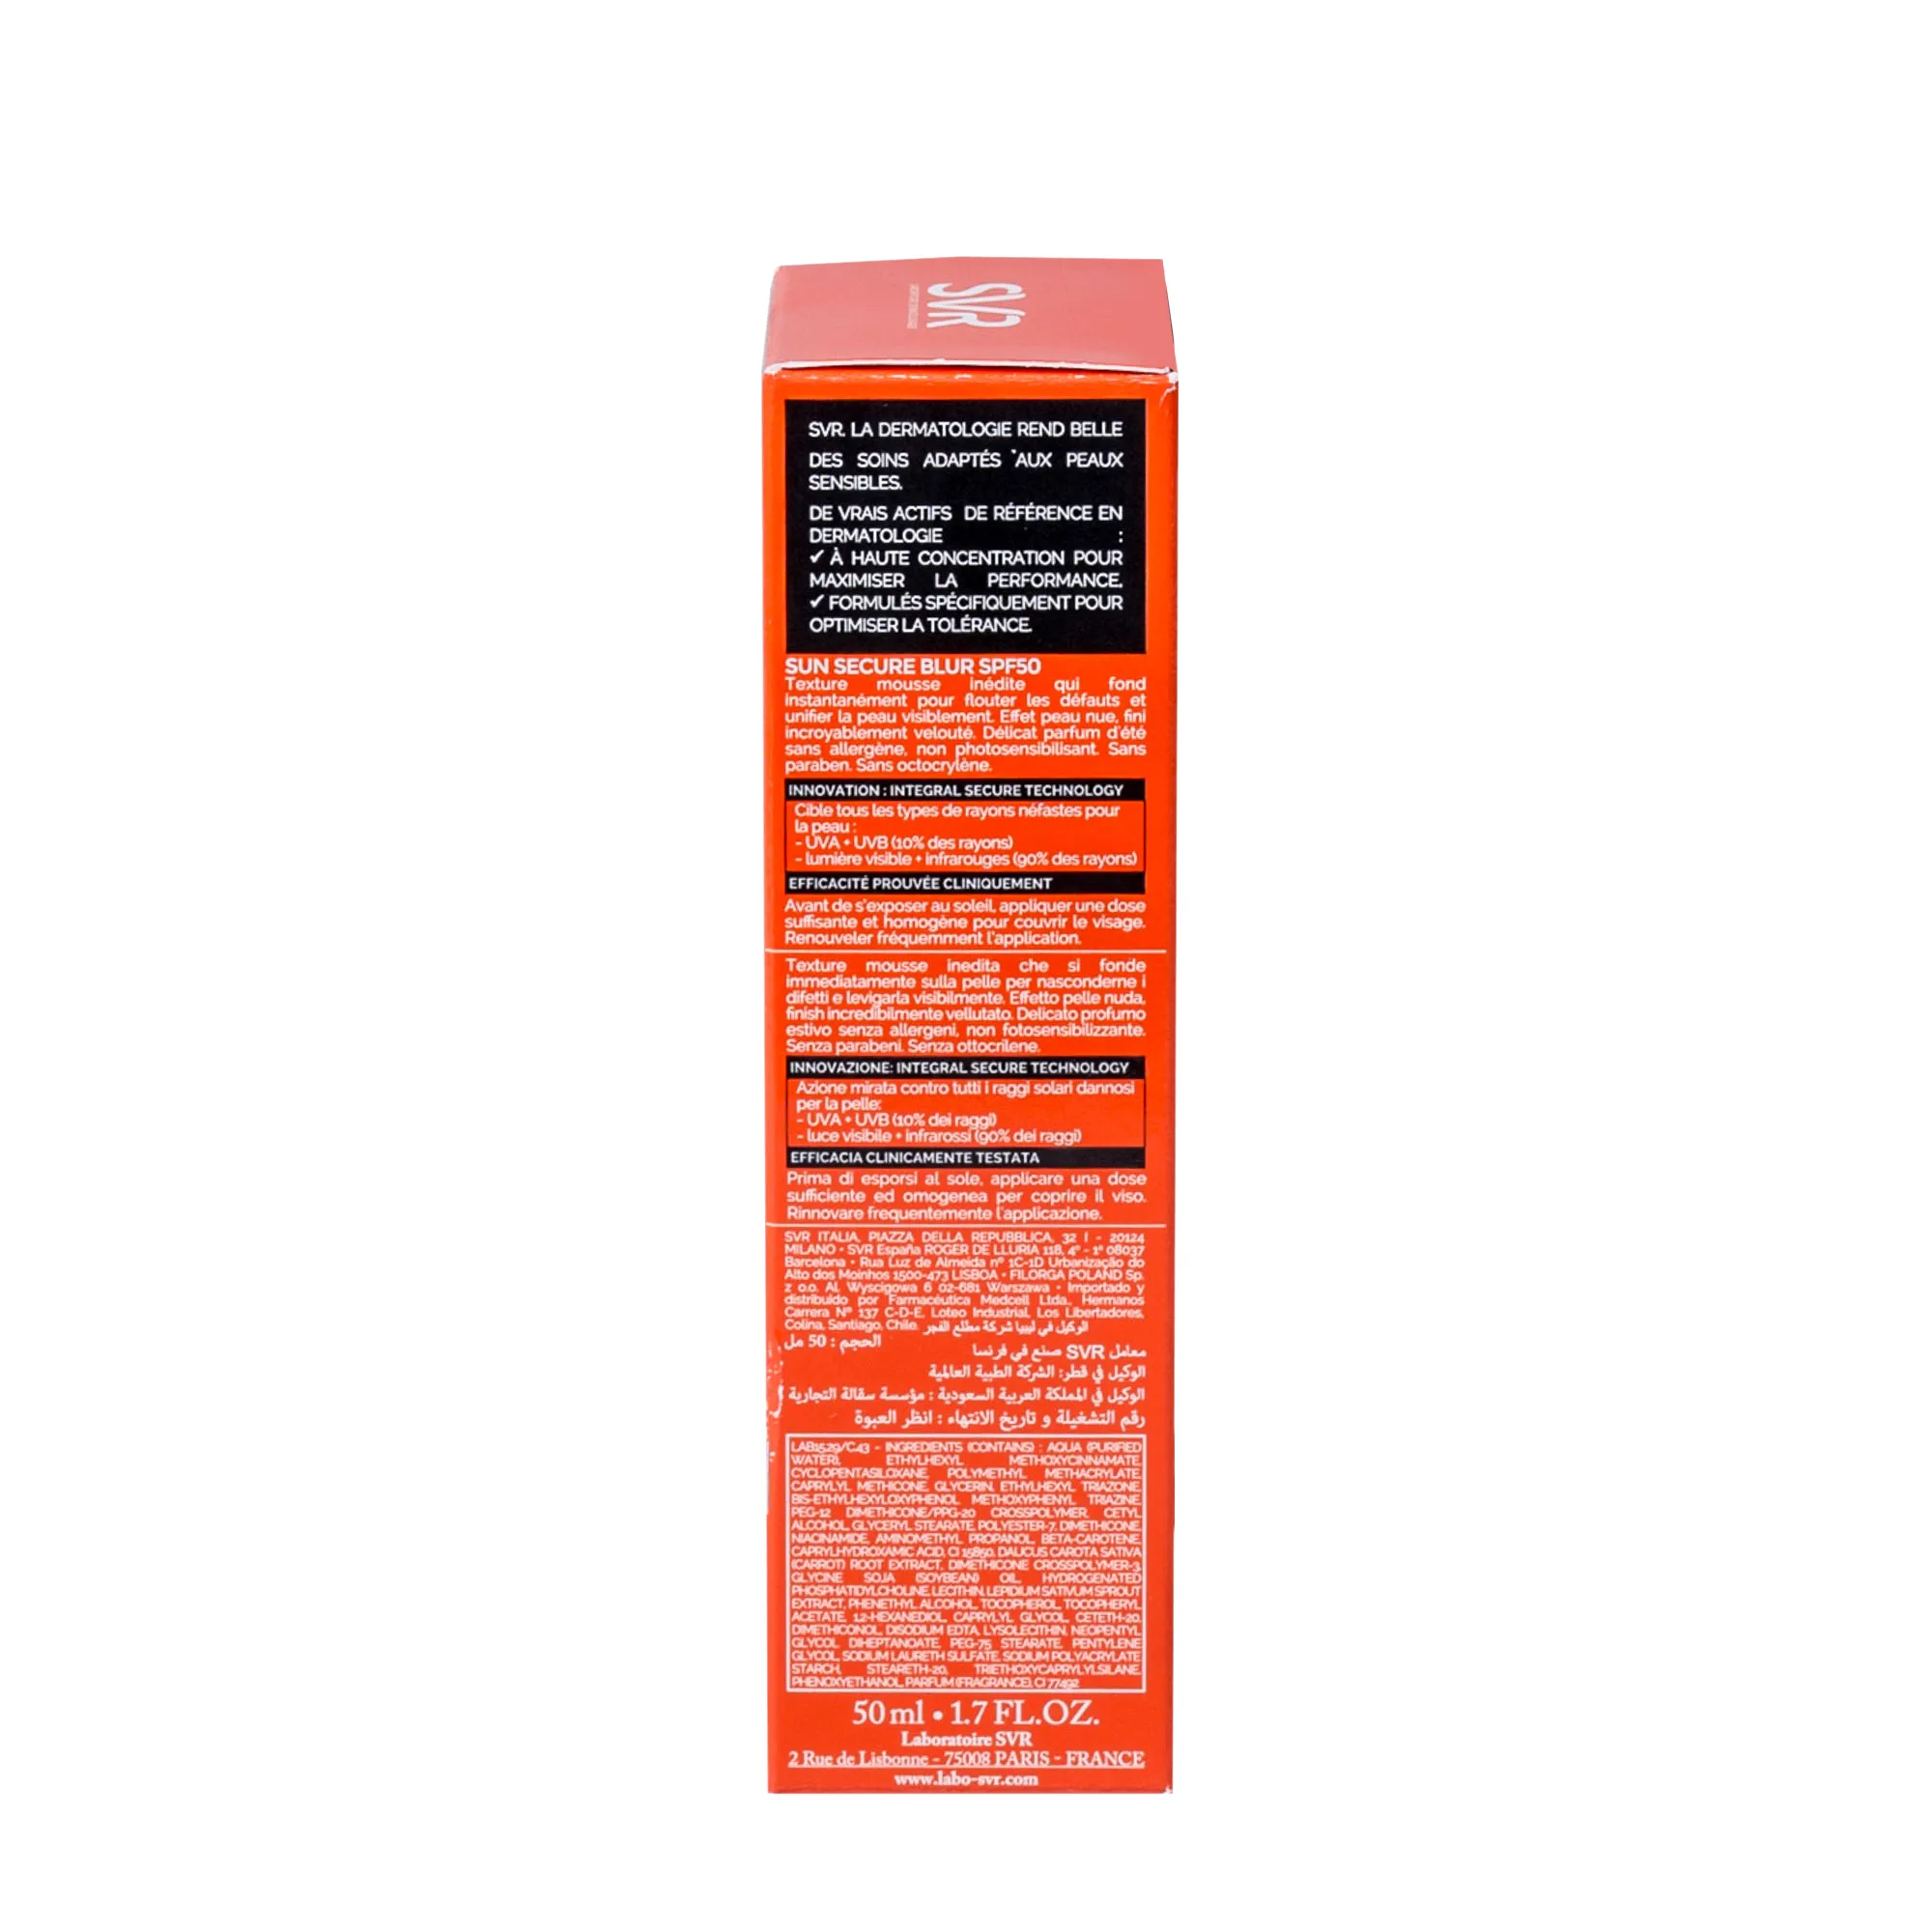 SVR Sunsecure Blur, Krem optycznie ujednolicający skórę SPF 50+, 50 ml 